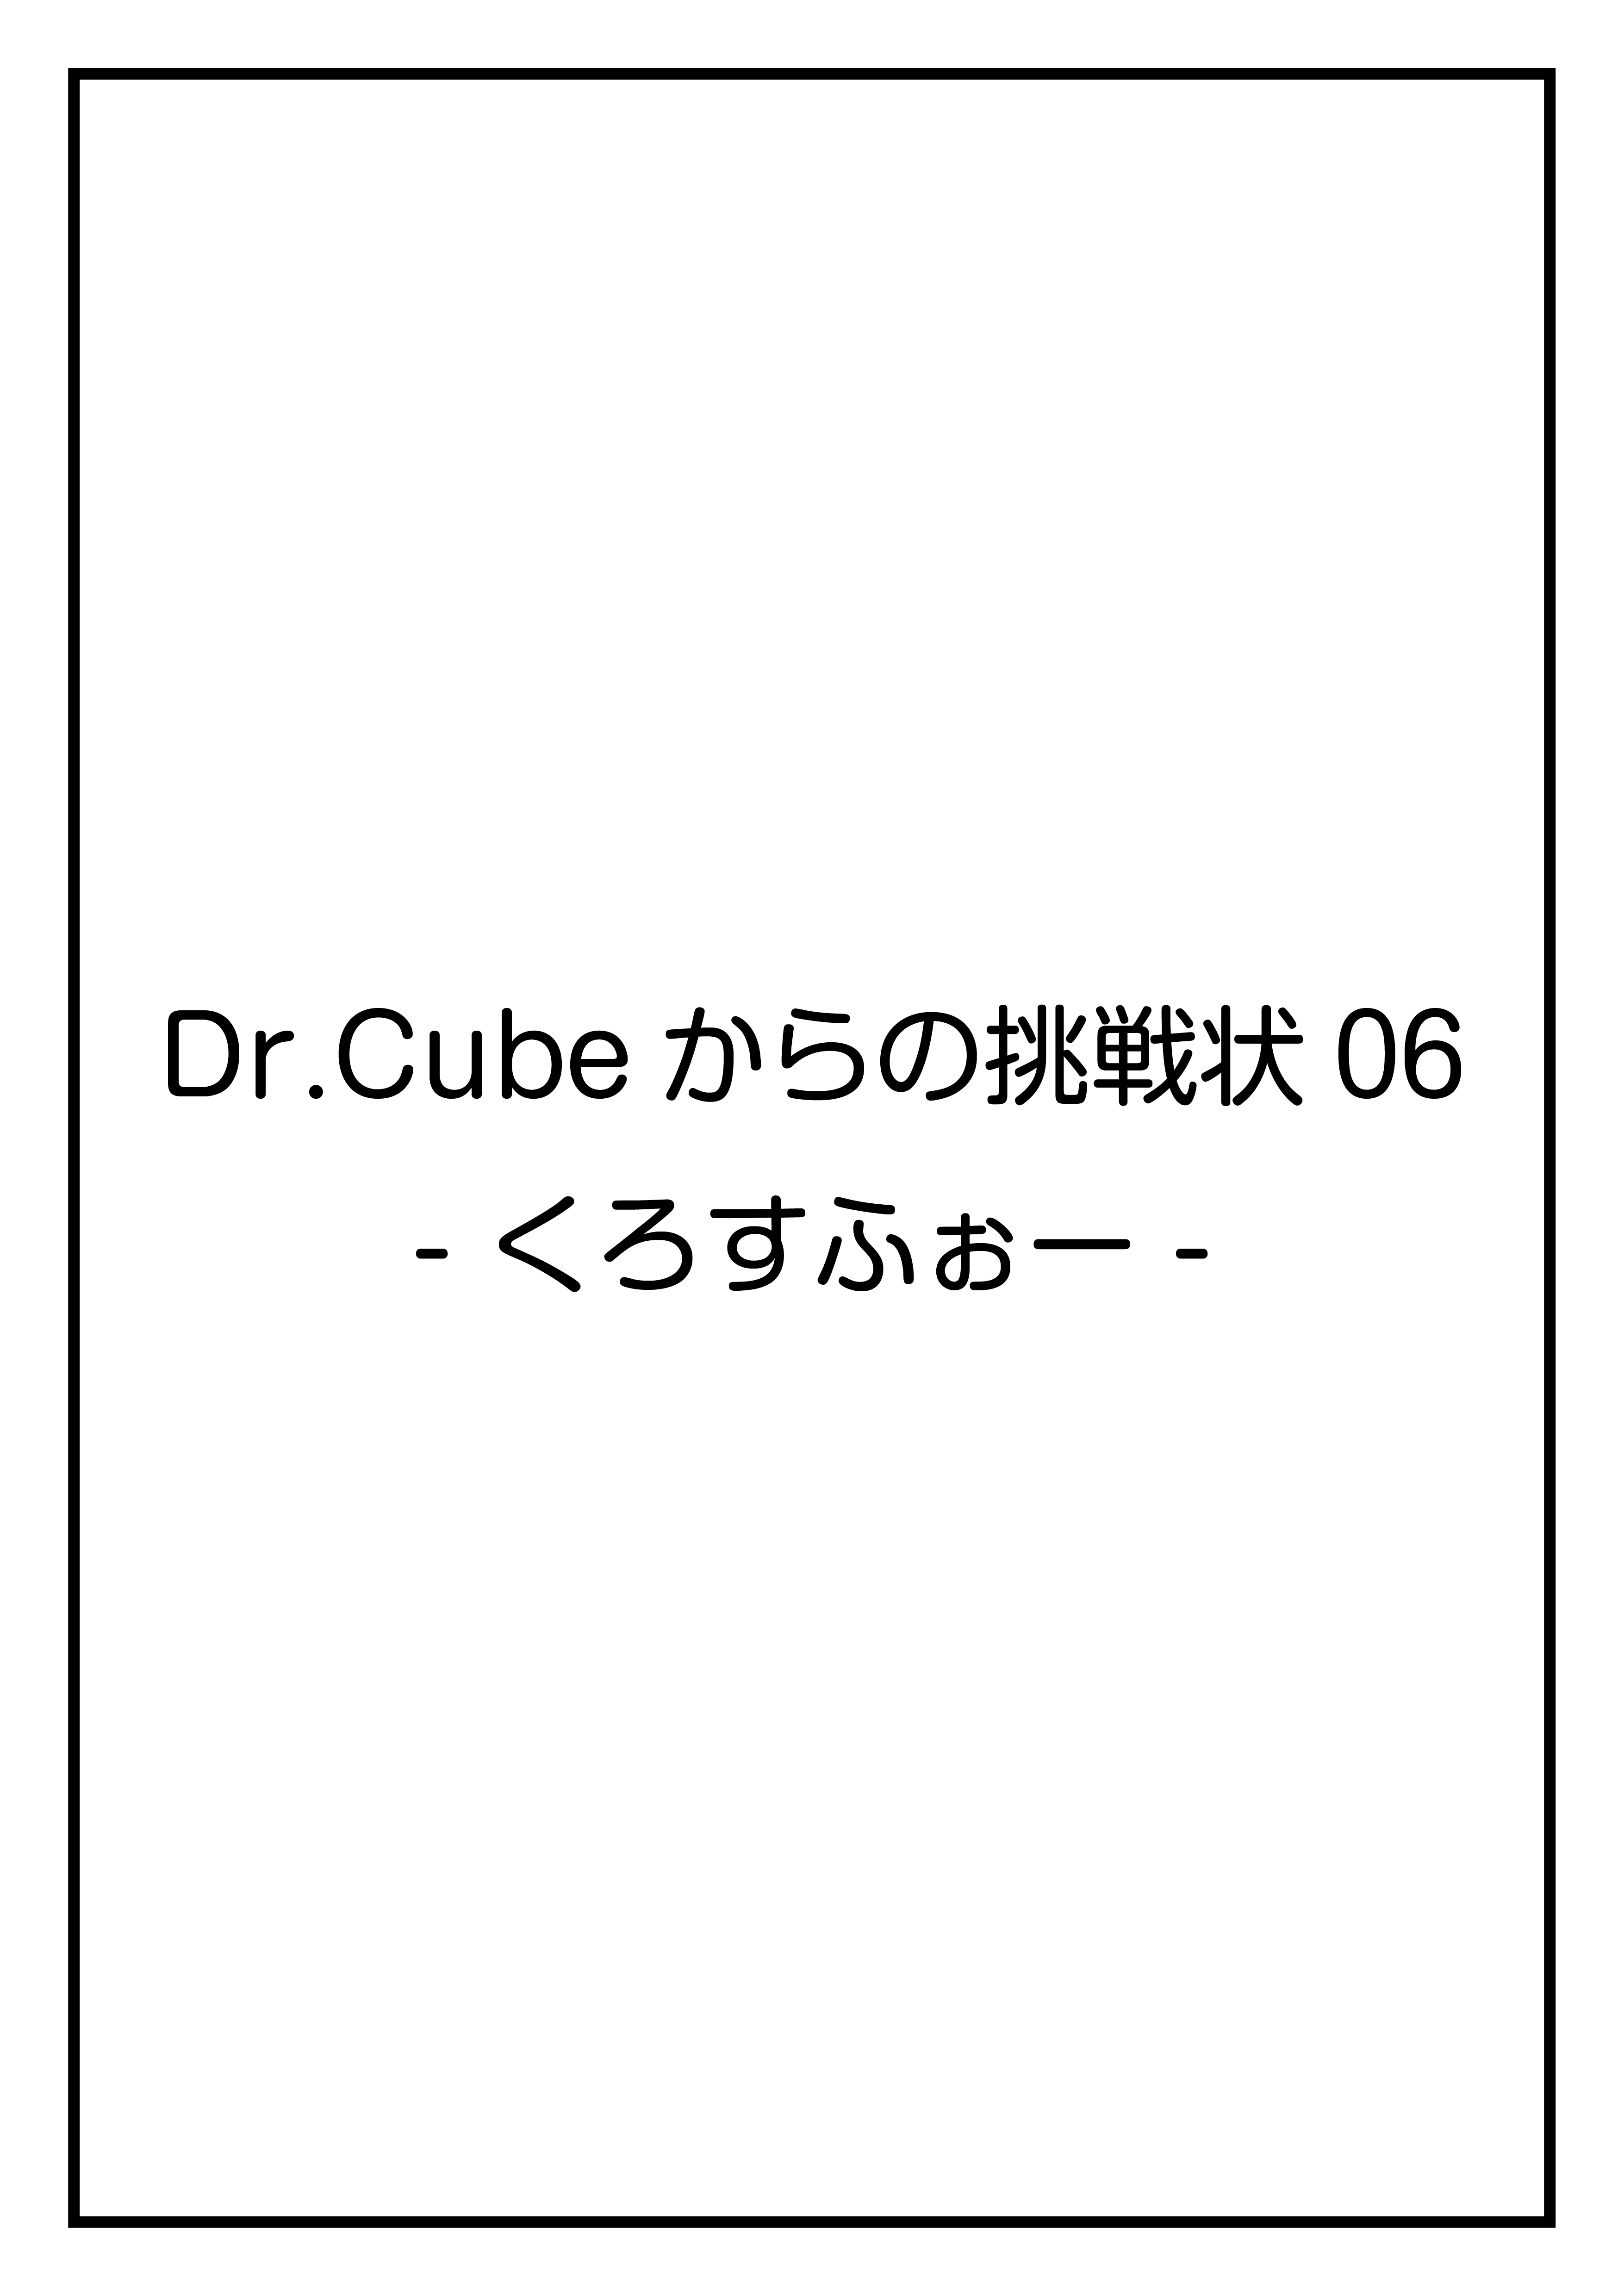 CubeFactory ✕ テクニコテクニカ『Dr.Cubeからの挑戦状06 -くろすふぉー-』体験型謎解きゲーム